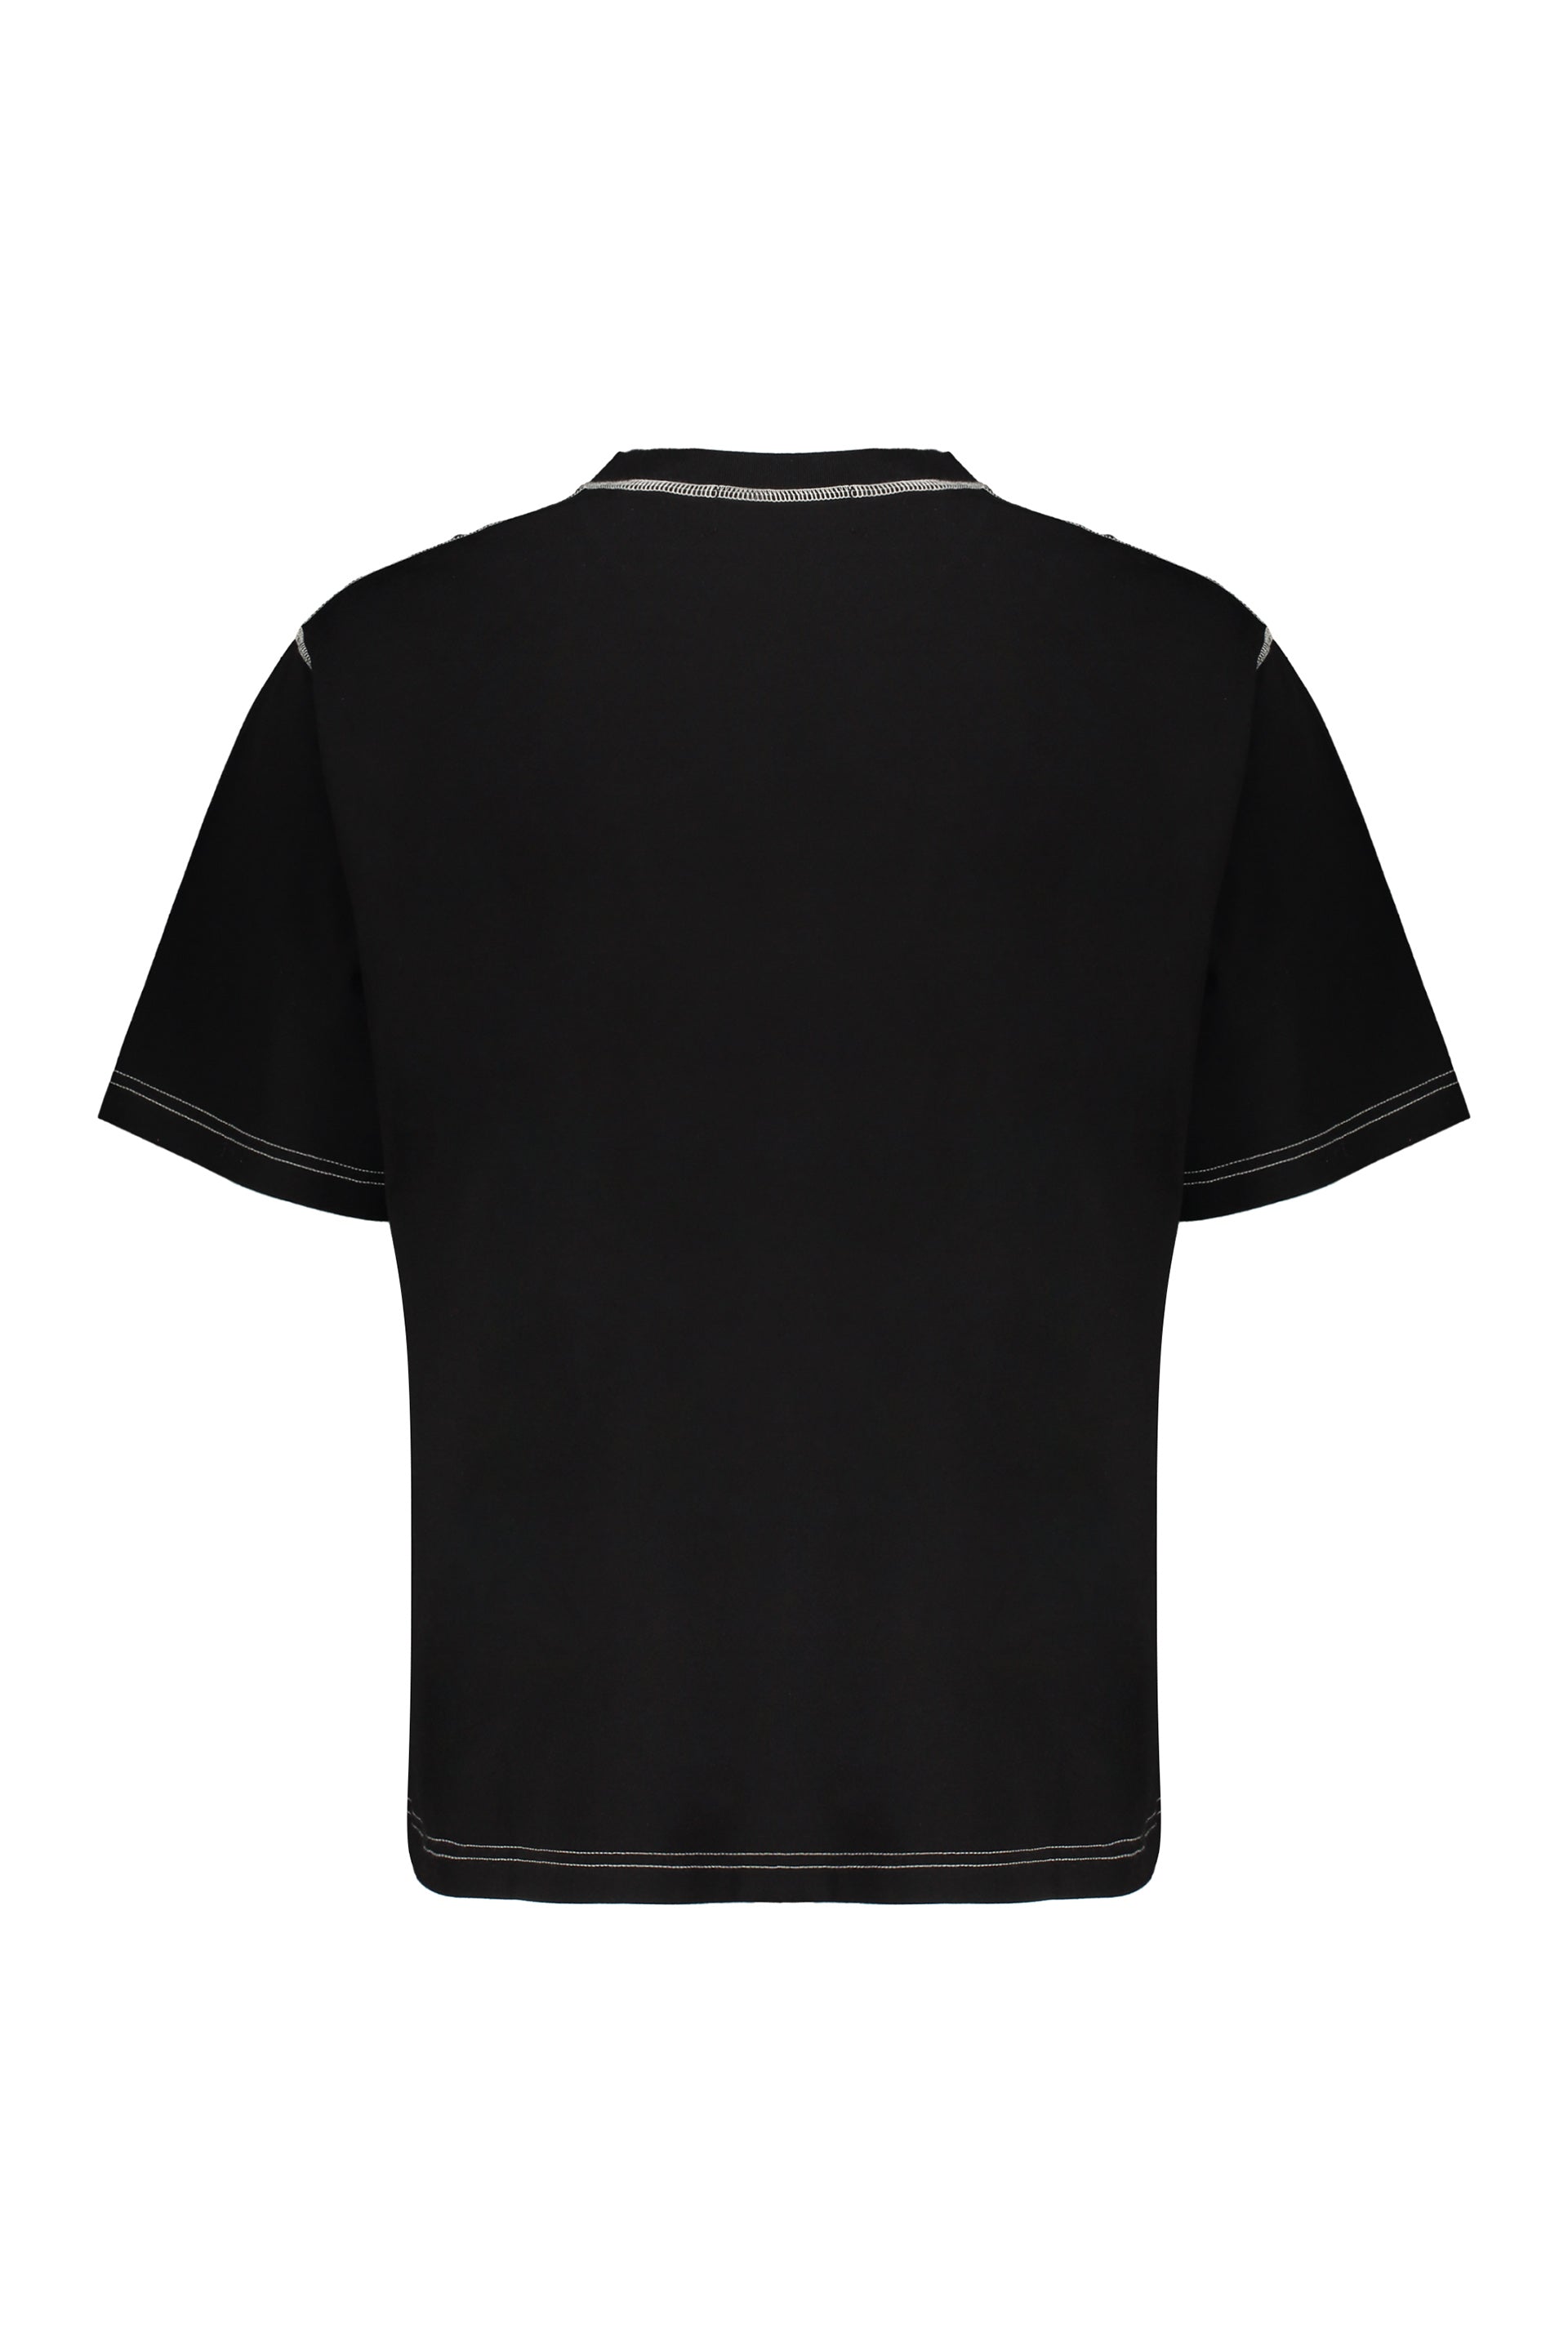 AMBUSH-OUTLET-SALE-Cotton-T-shirt-Shirts-S-ARCHIVE-COLLECTION-2.jpg